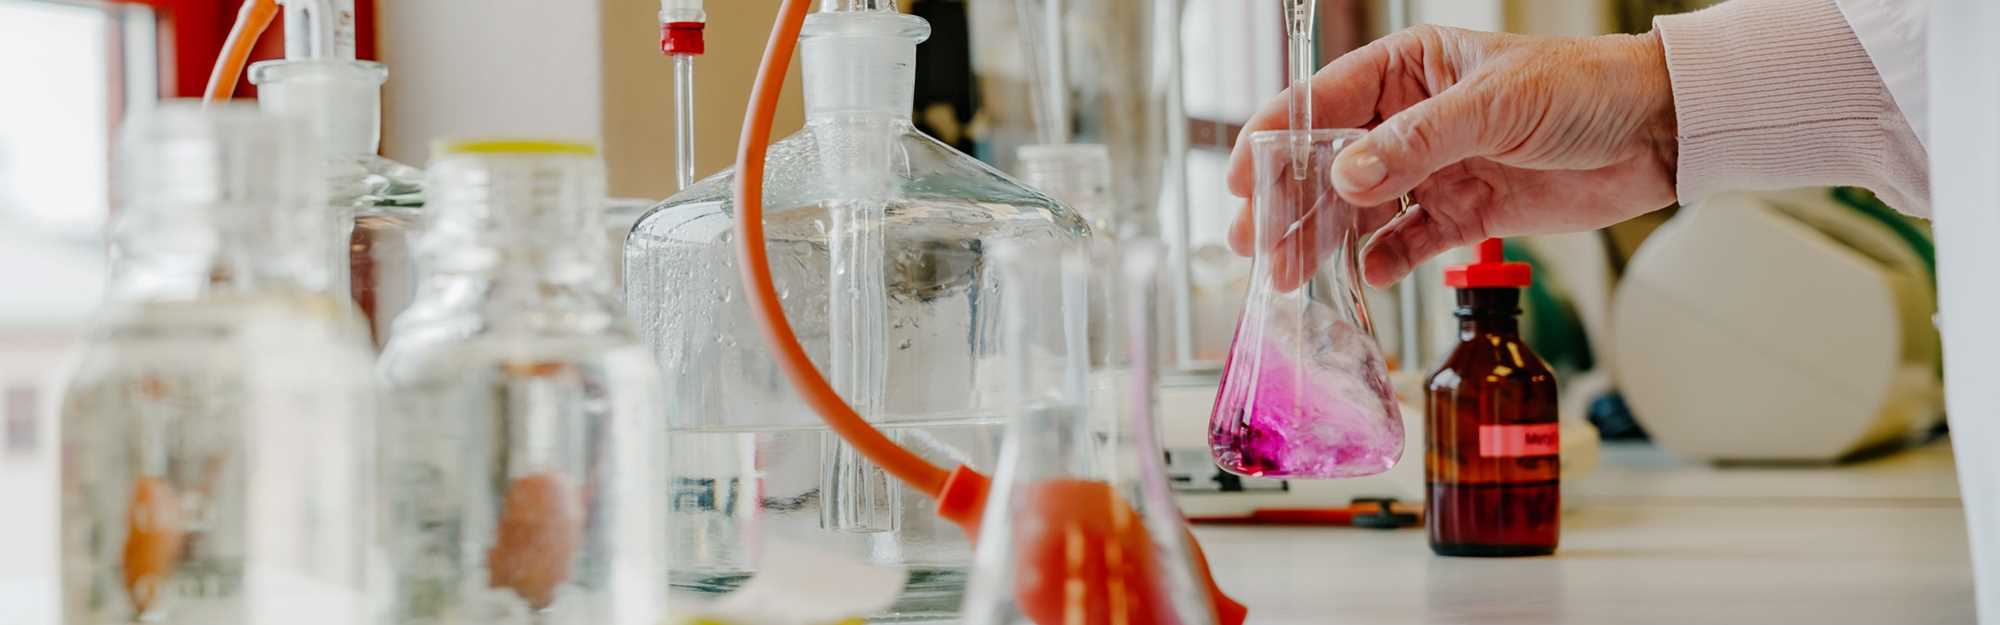 Nærbilde reagensrør med ulikt innhold i fargene rosa og gult.